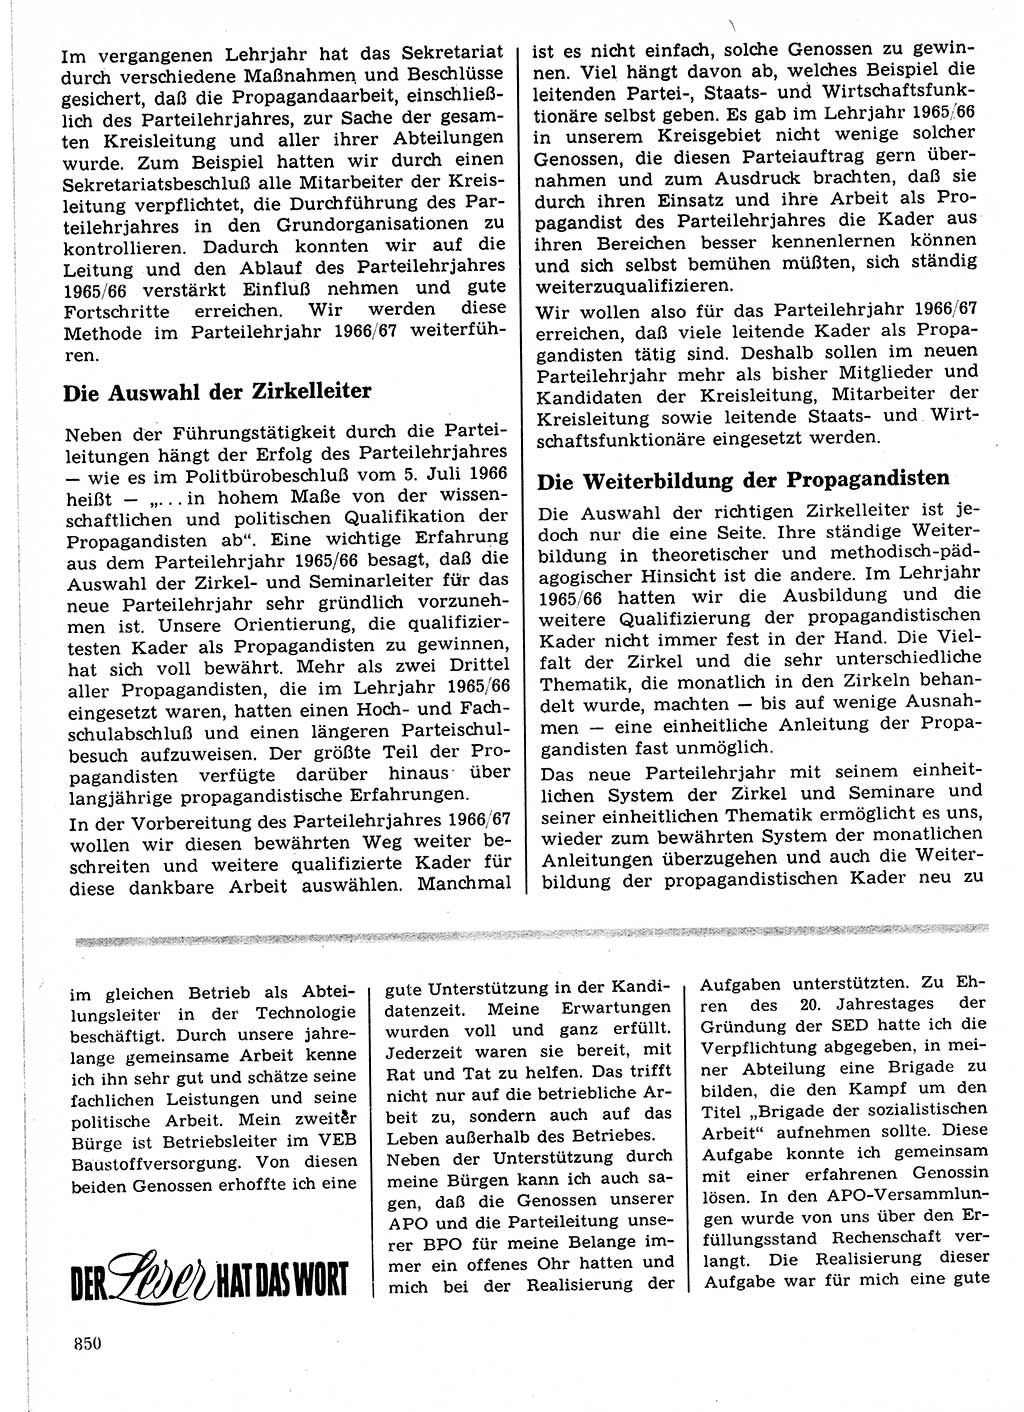 Neuer Weg (NW), Organ des Zentralkomitees (ZK) der SED (Sozialistische Einheitspartei Deutschlands) für Fragen des Parteilebens, 21. Jahrgang [Deutsche Demokratische Republik (DDR)] 1966, Seite 850 (NW ZK SED DDR 1966, S. 850)